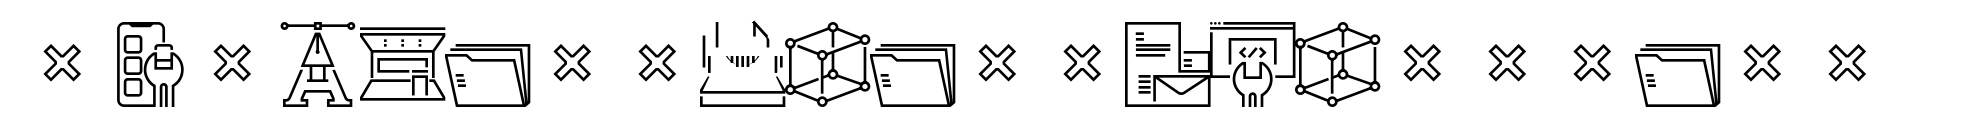 Square Line Icons Design